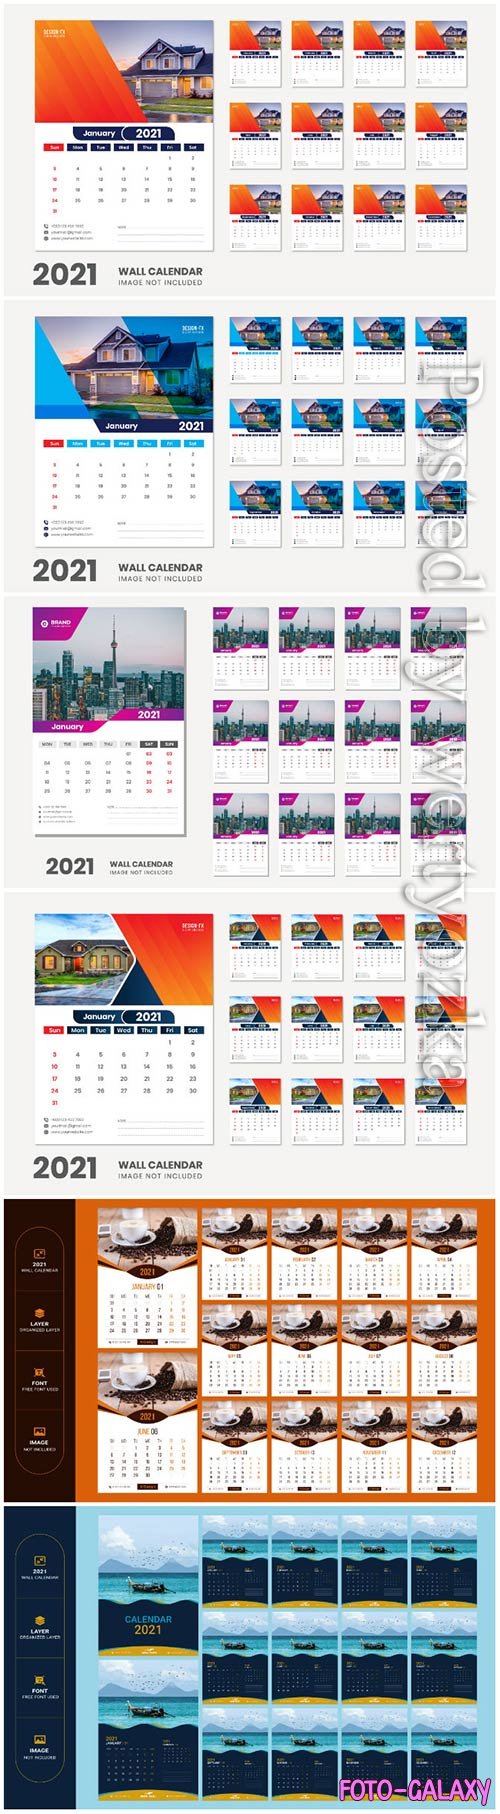 2021 desk calendar - 12 months included